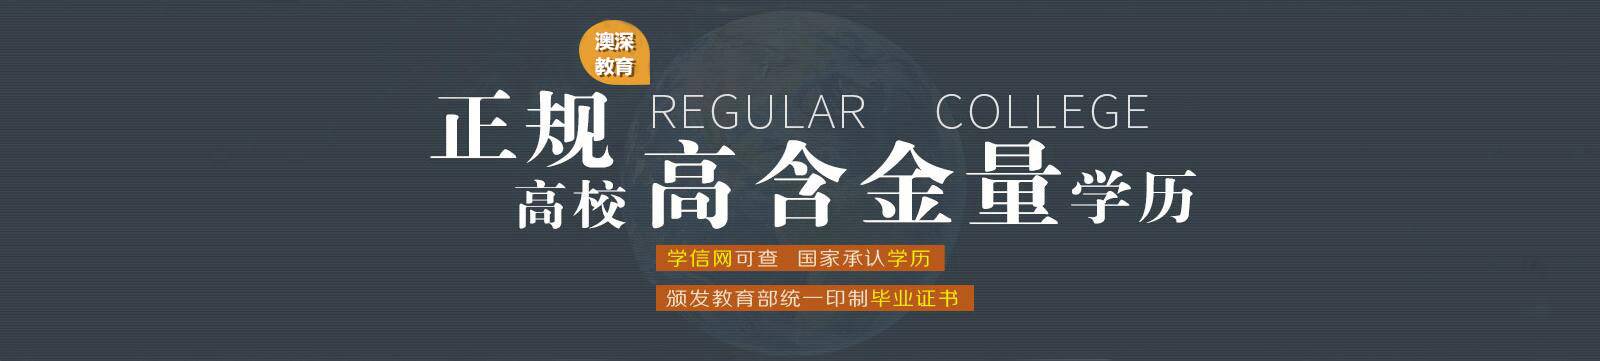 深圳学历教育中心为您提供正规高校高含金量学历教育服务。